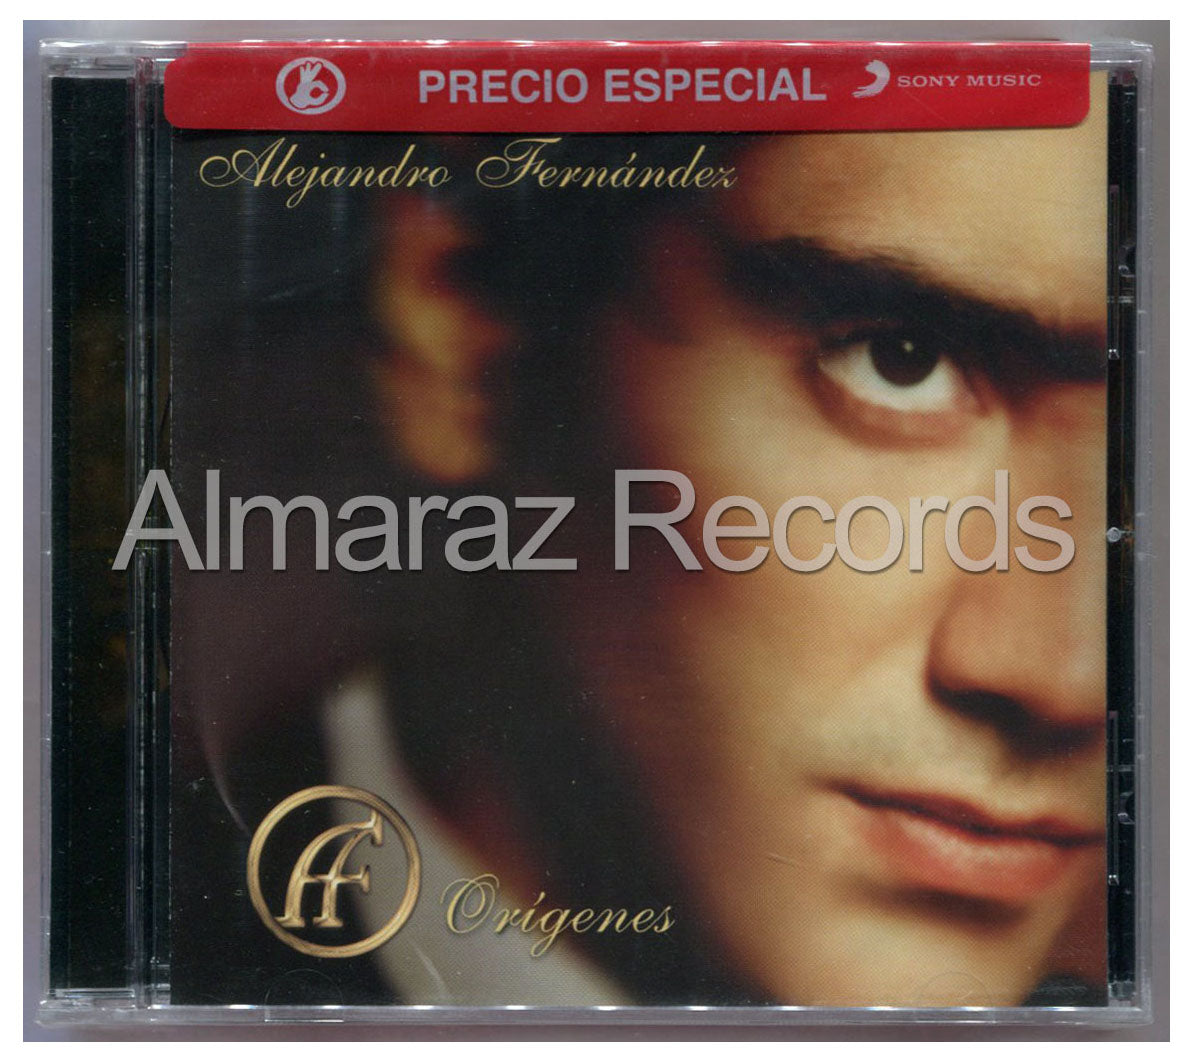 Alejandro Fernandez Origenes CD